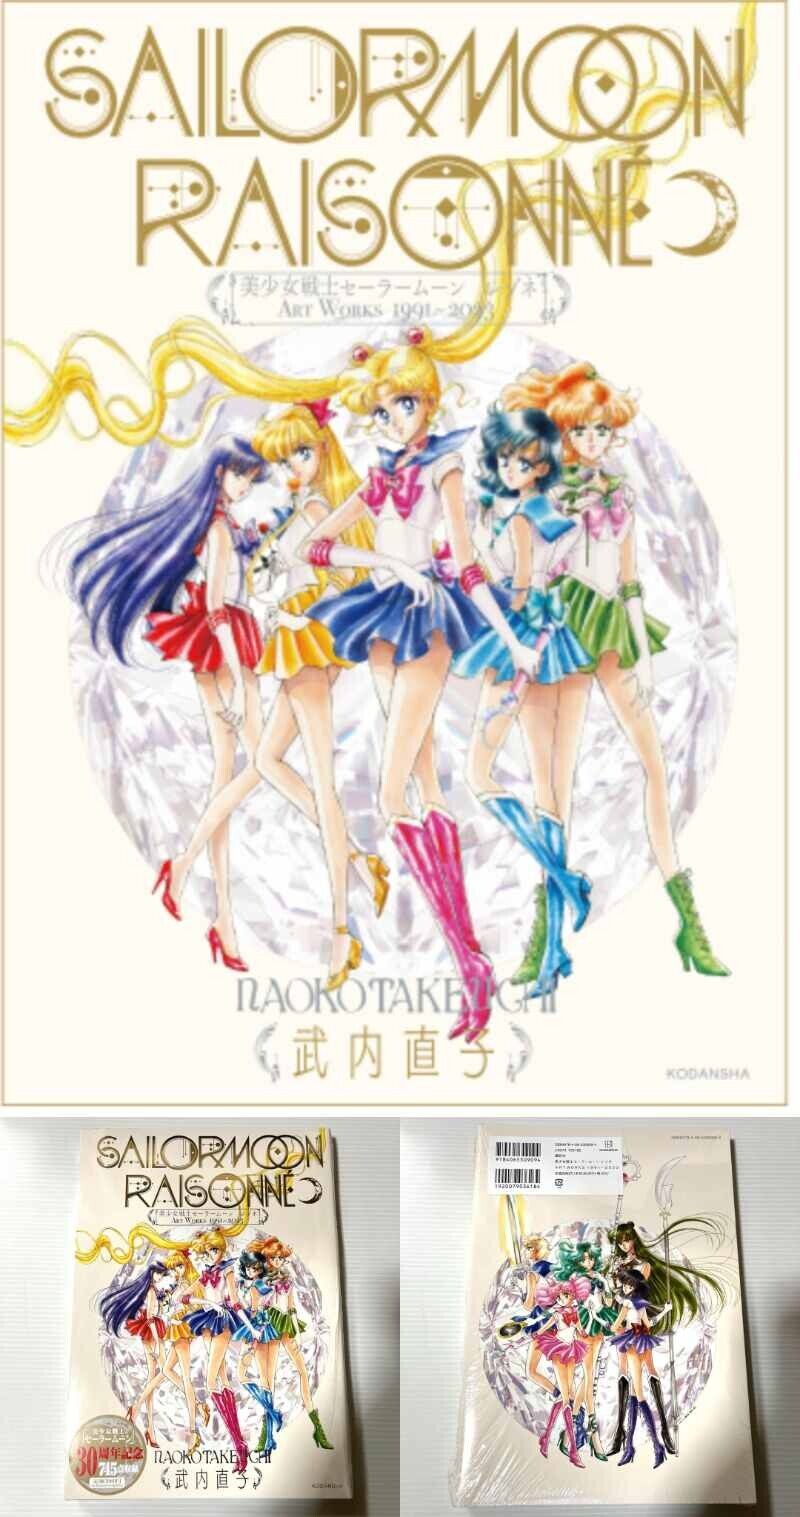 Sailor Moon Raisonne ART WORKS 1991～2023 Normal Edition